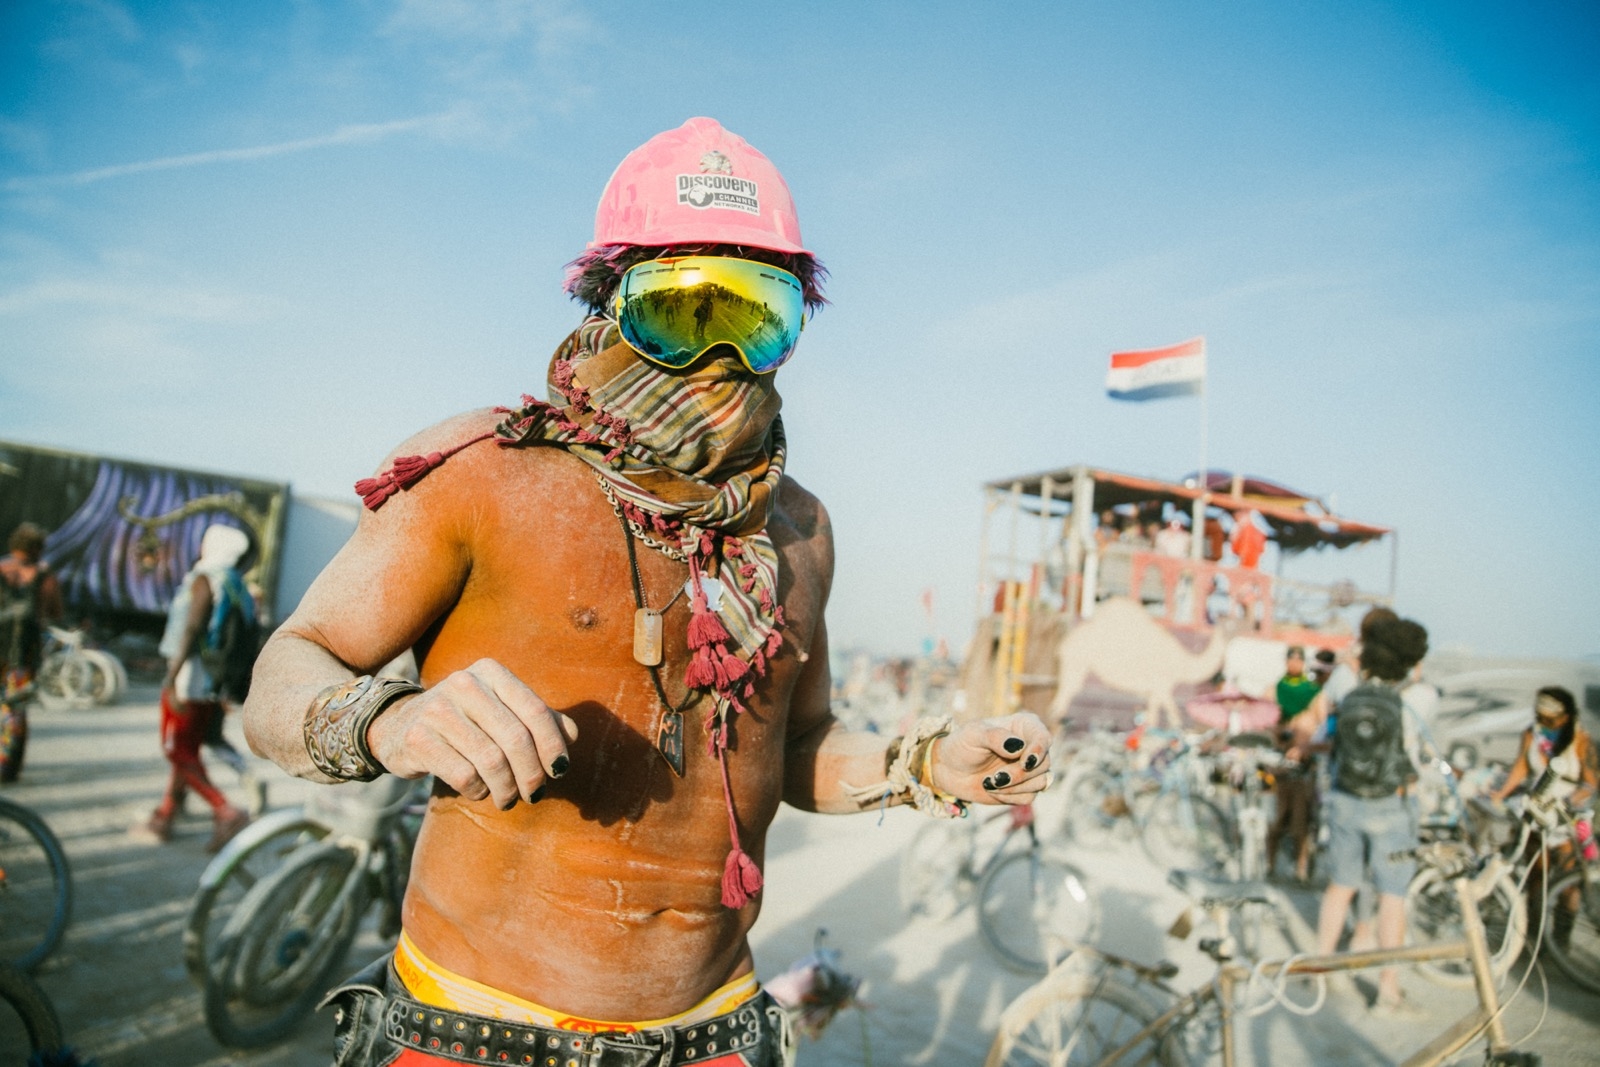 Burning Man Festivali Ne Zaman Başlıyor